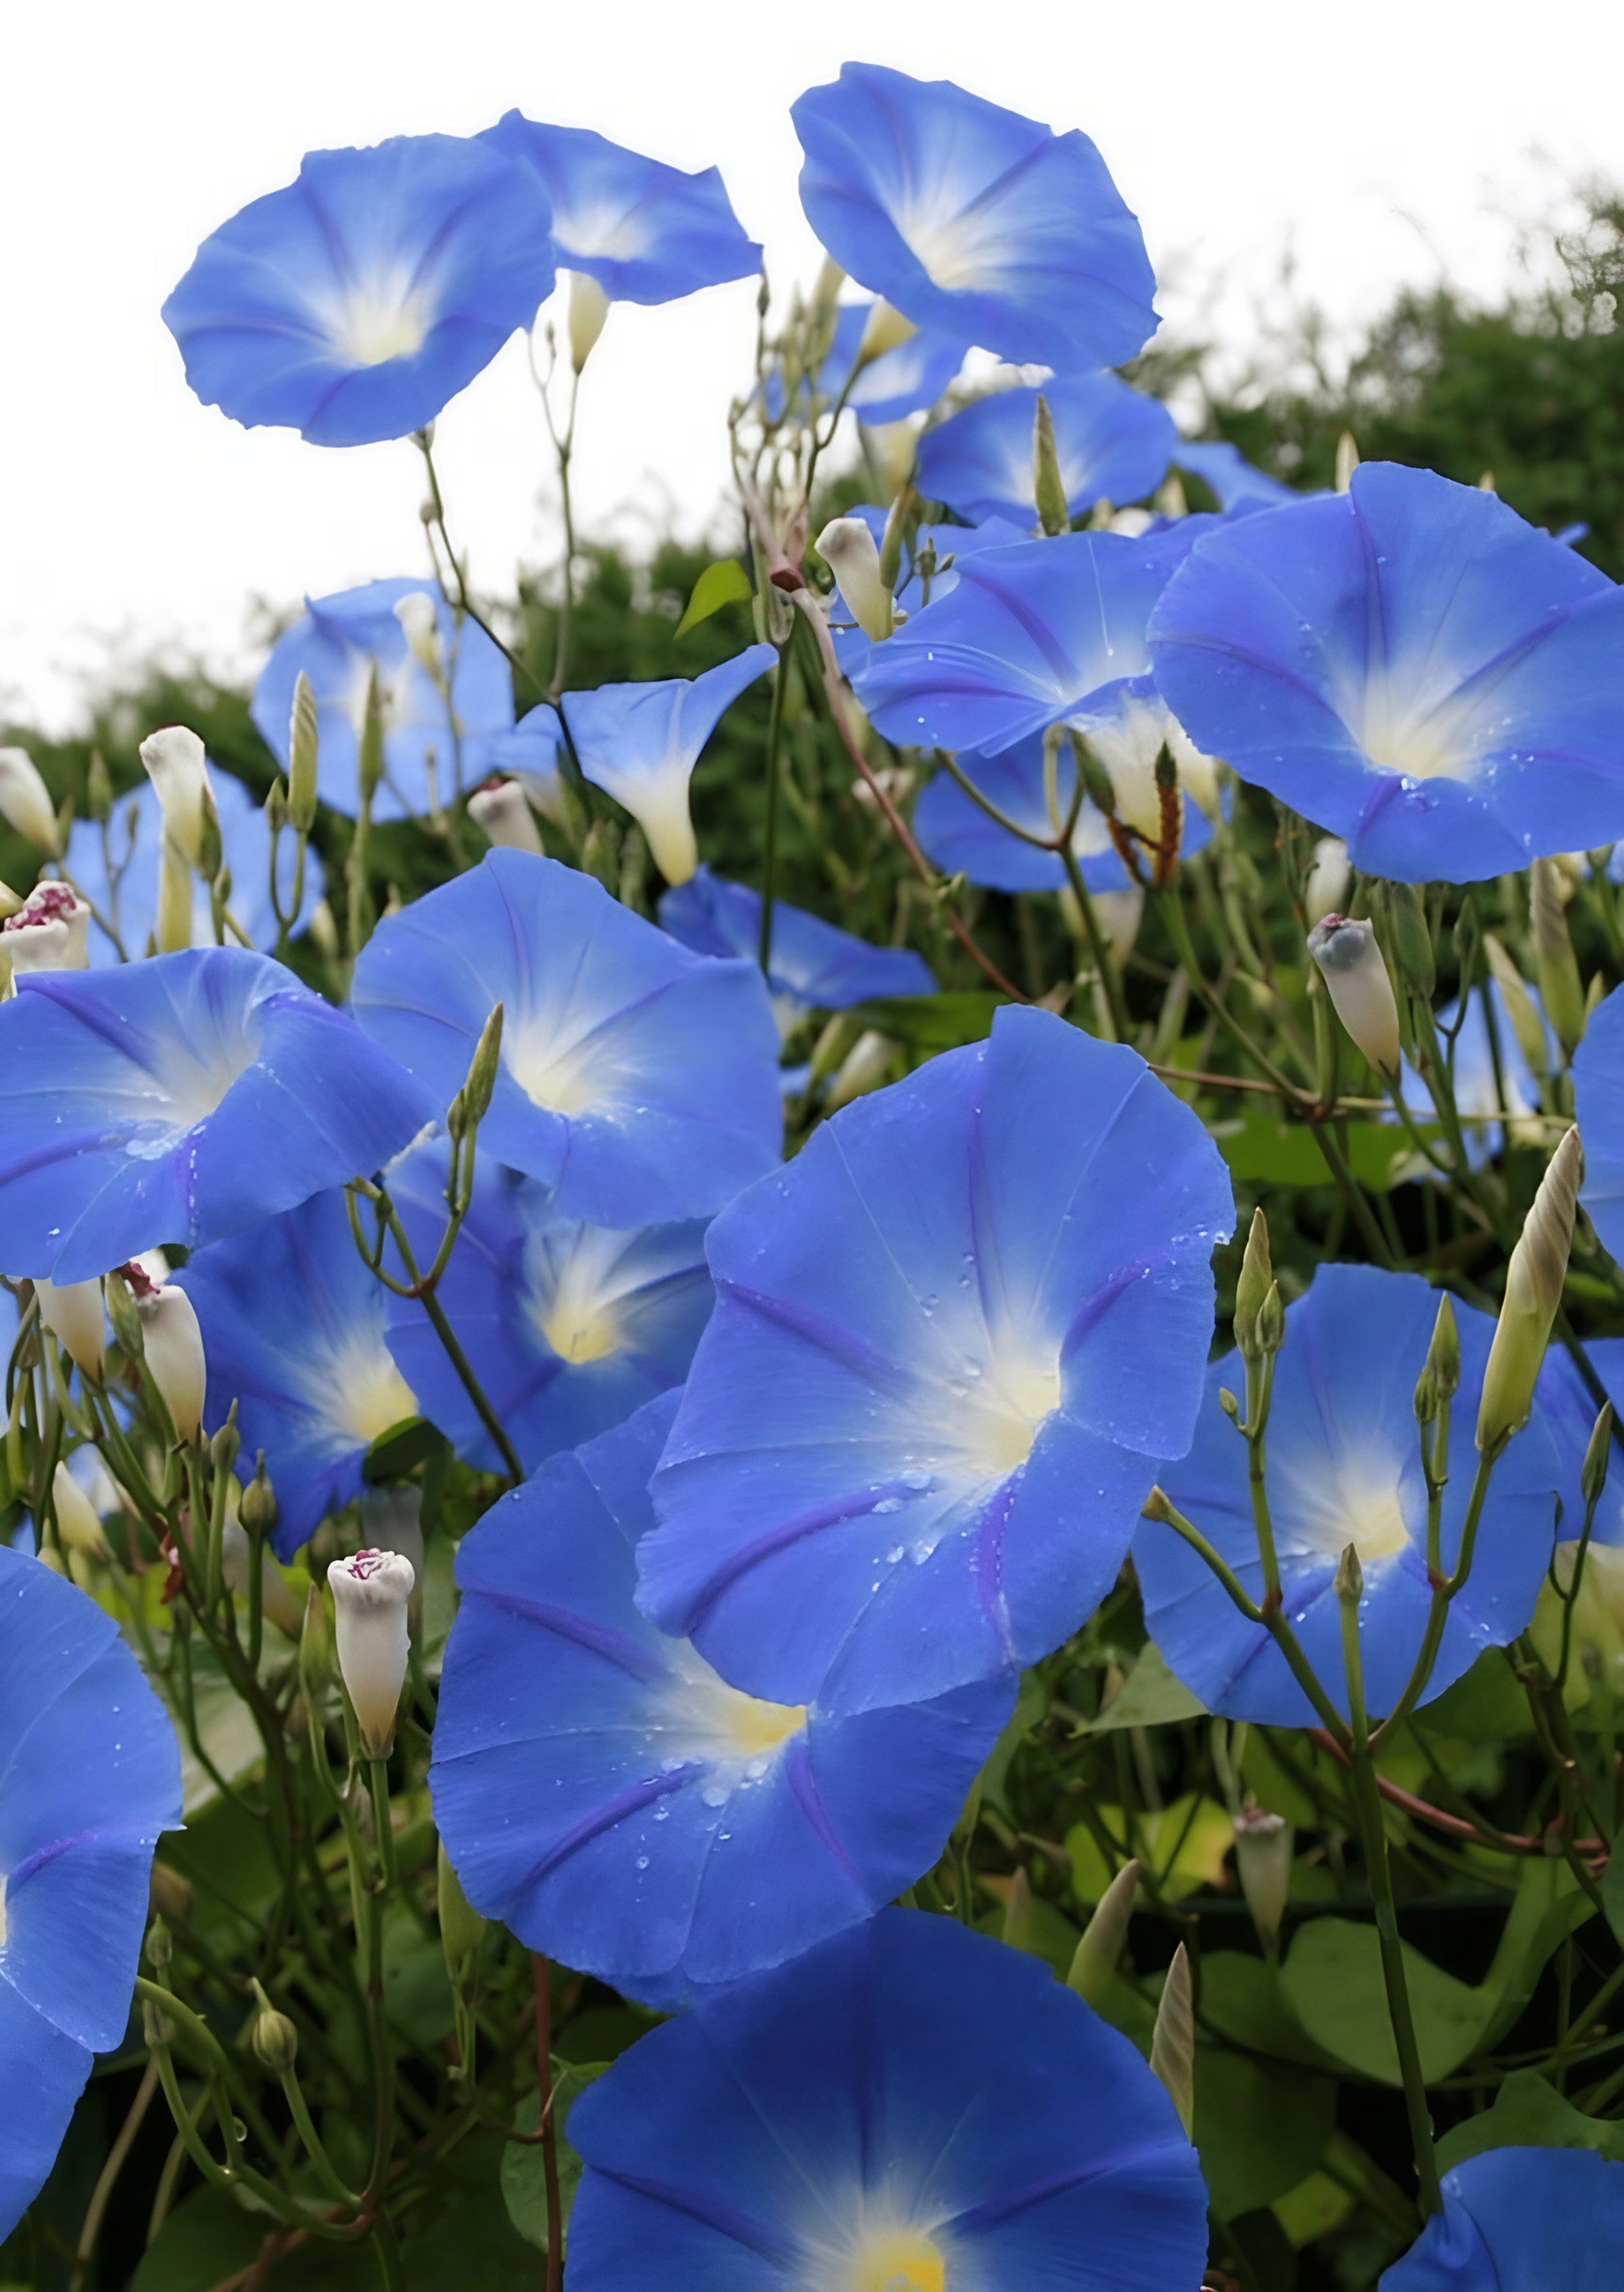 Cluster of Ipomoea Heavenly Blue flowers in bloom